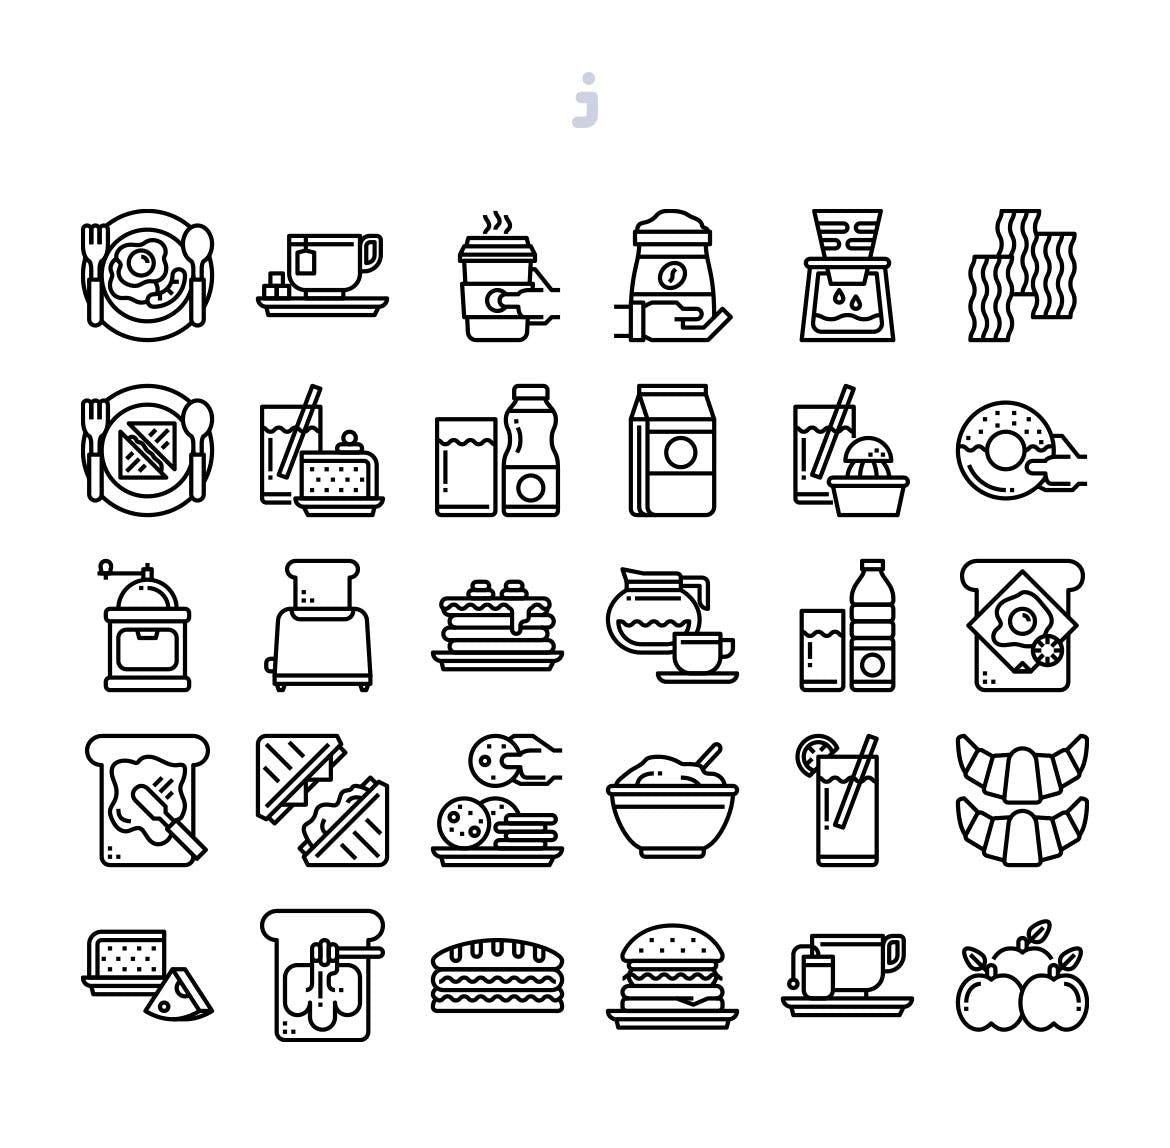 30枚早餐主题矢量图标 30 Breakfast Icons插图(2)